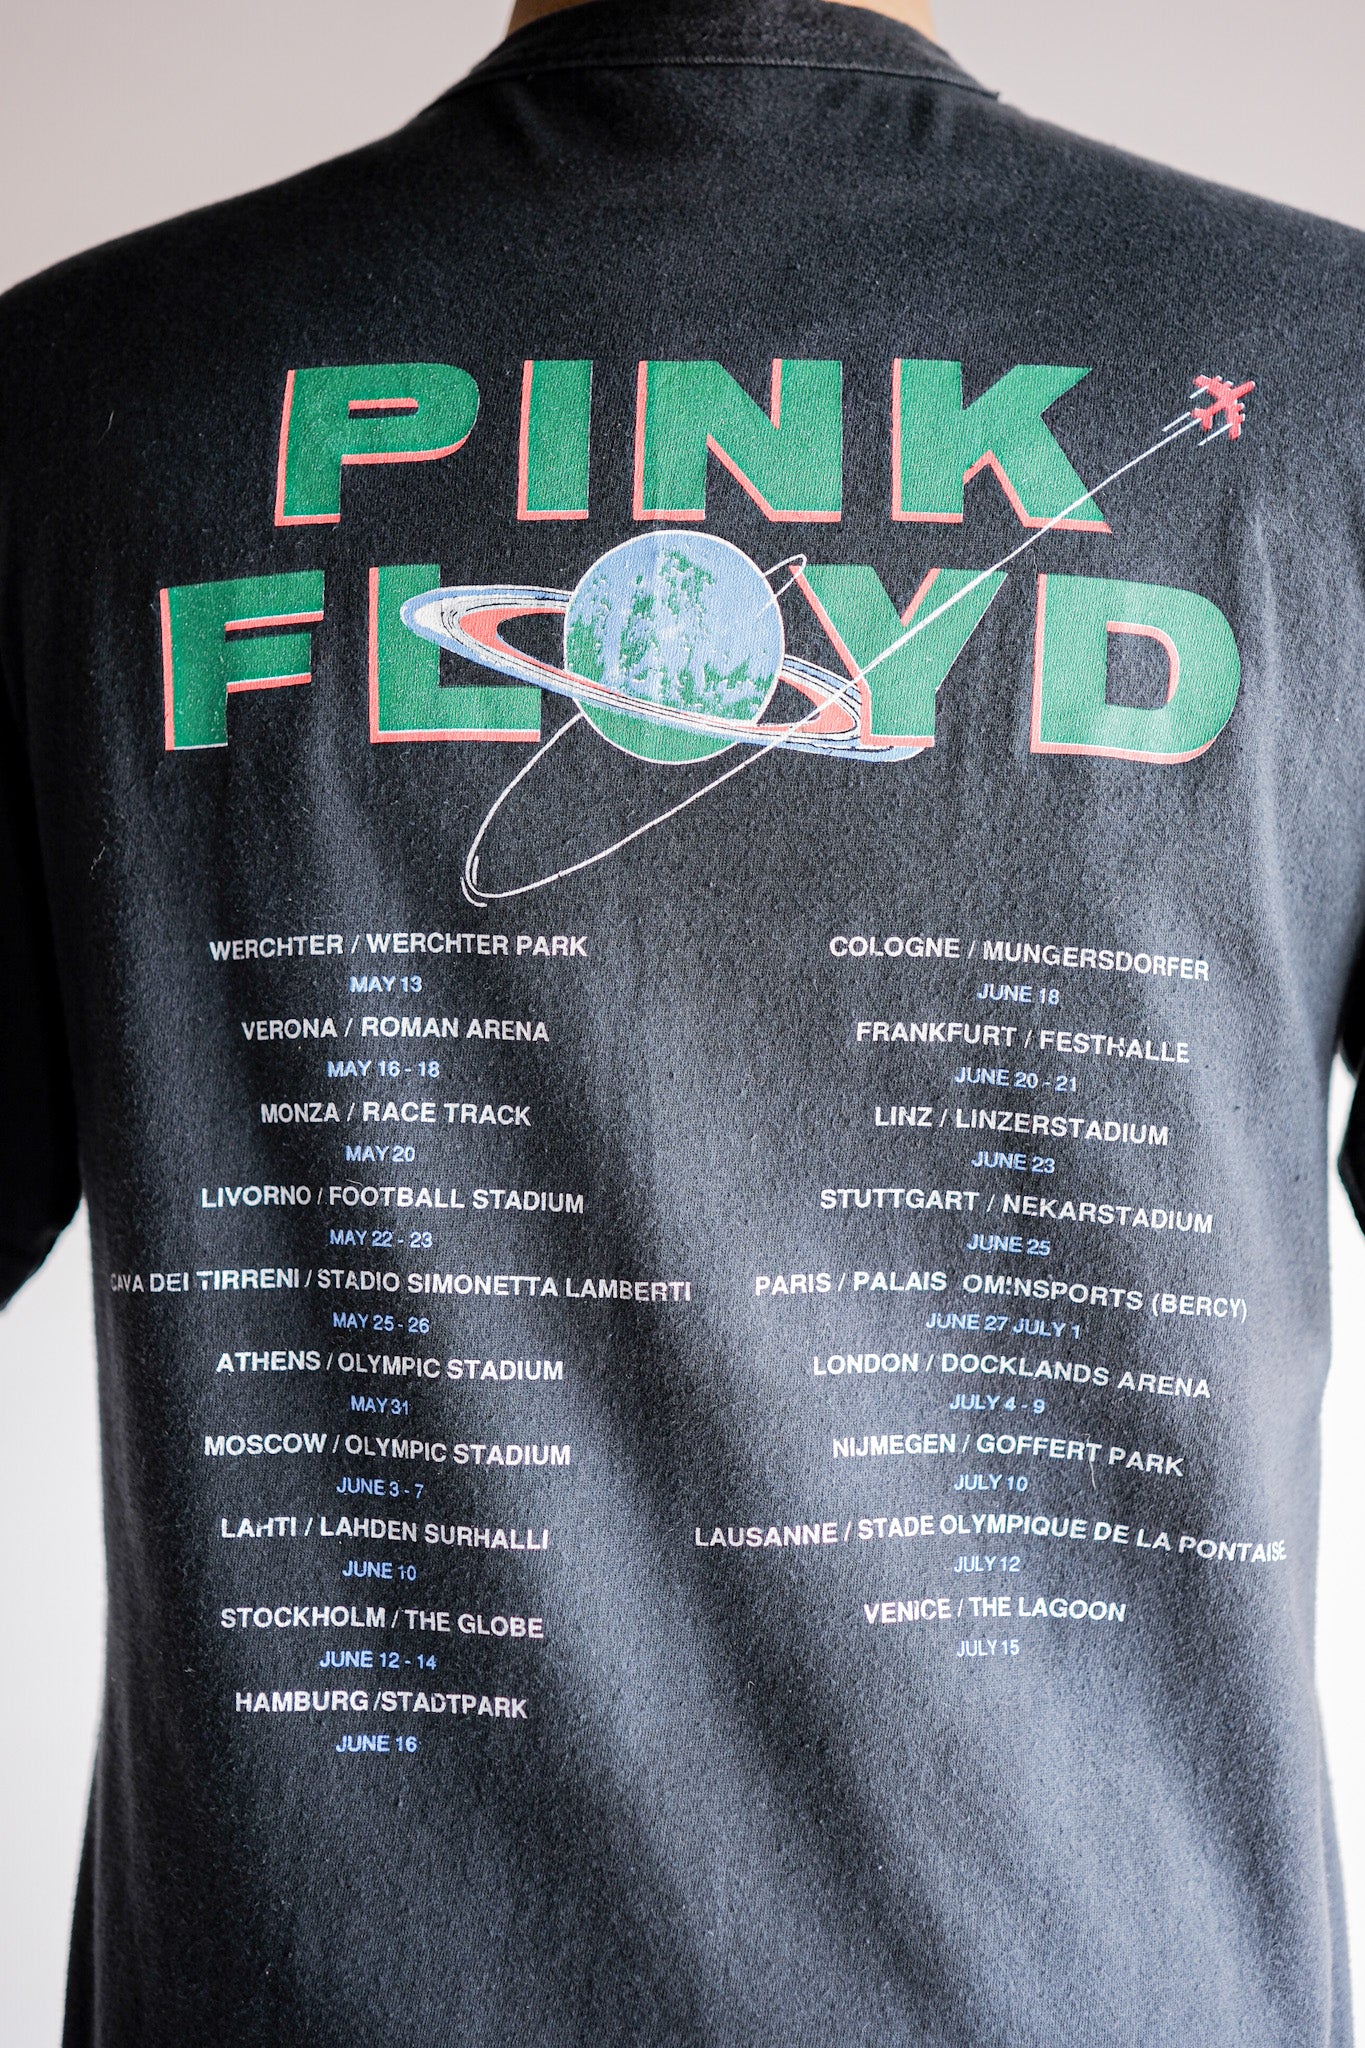 [~ 90's] เสื้อยืดพิมพ์เพลงวินเทจ "Pink Floyd"